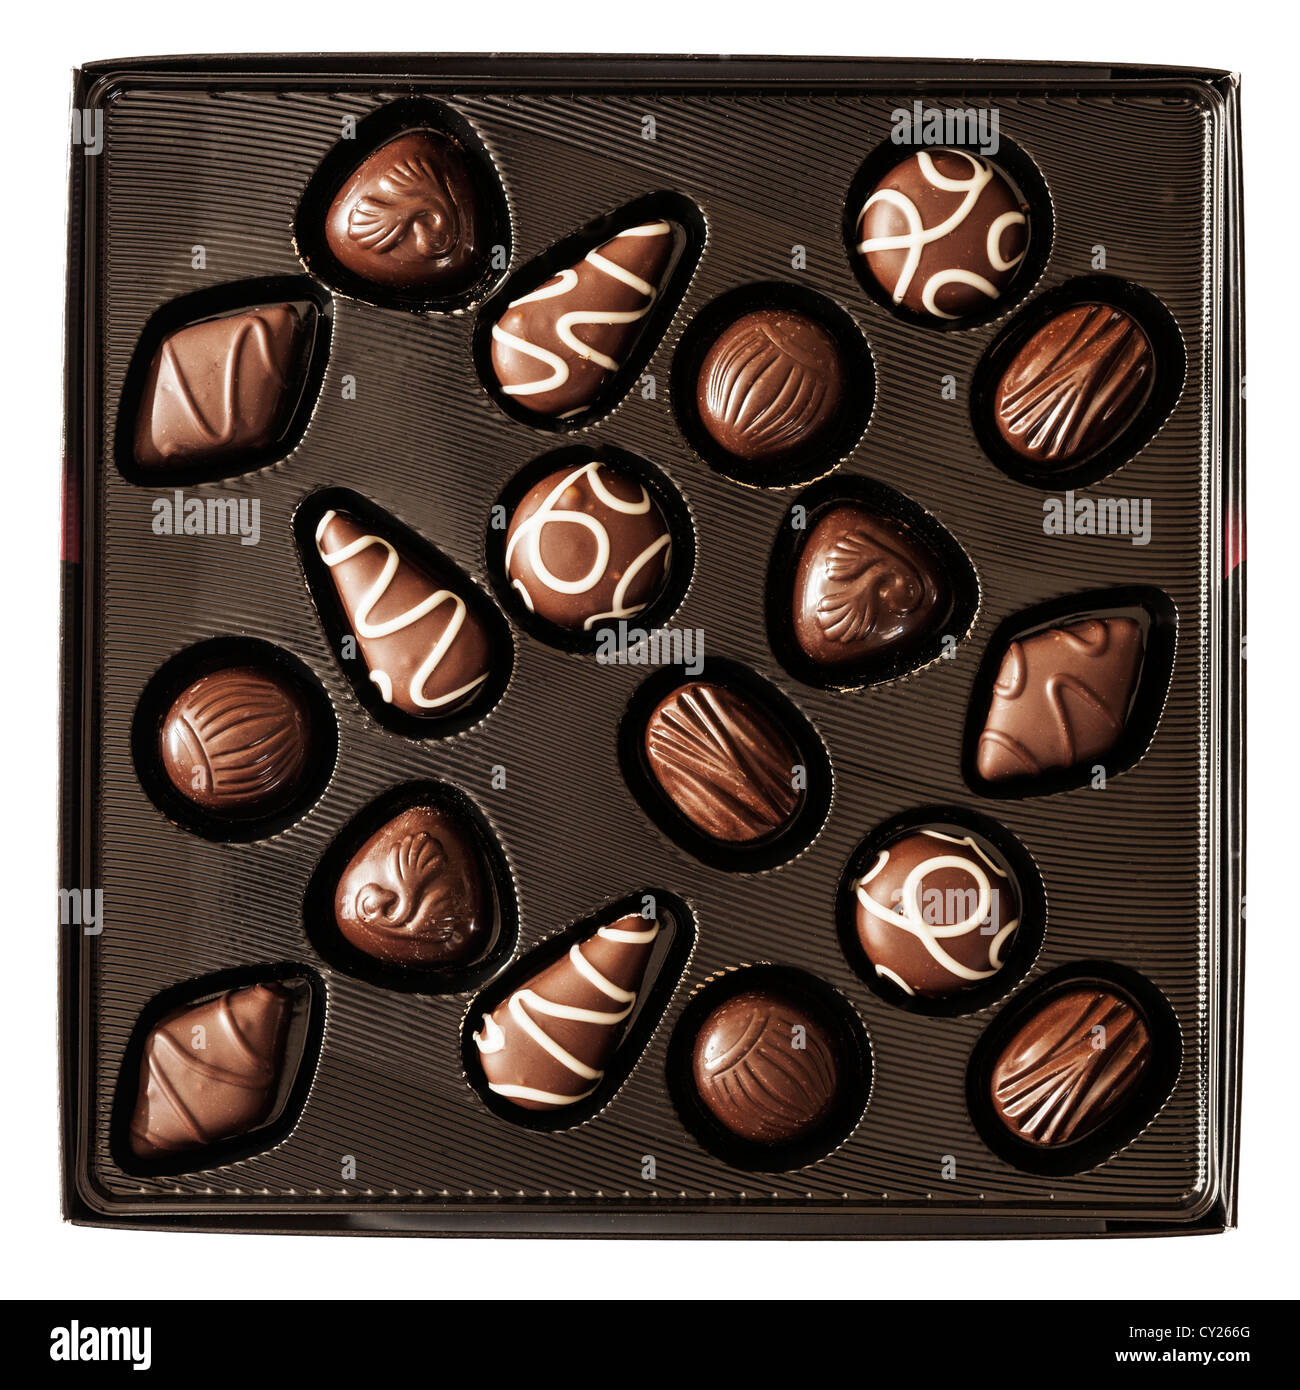 Une boîte de magie noir Nestlé chocolats noirs sur fond blanc Banque D'Images